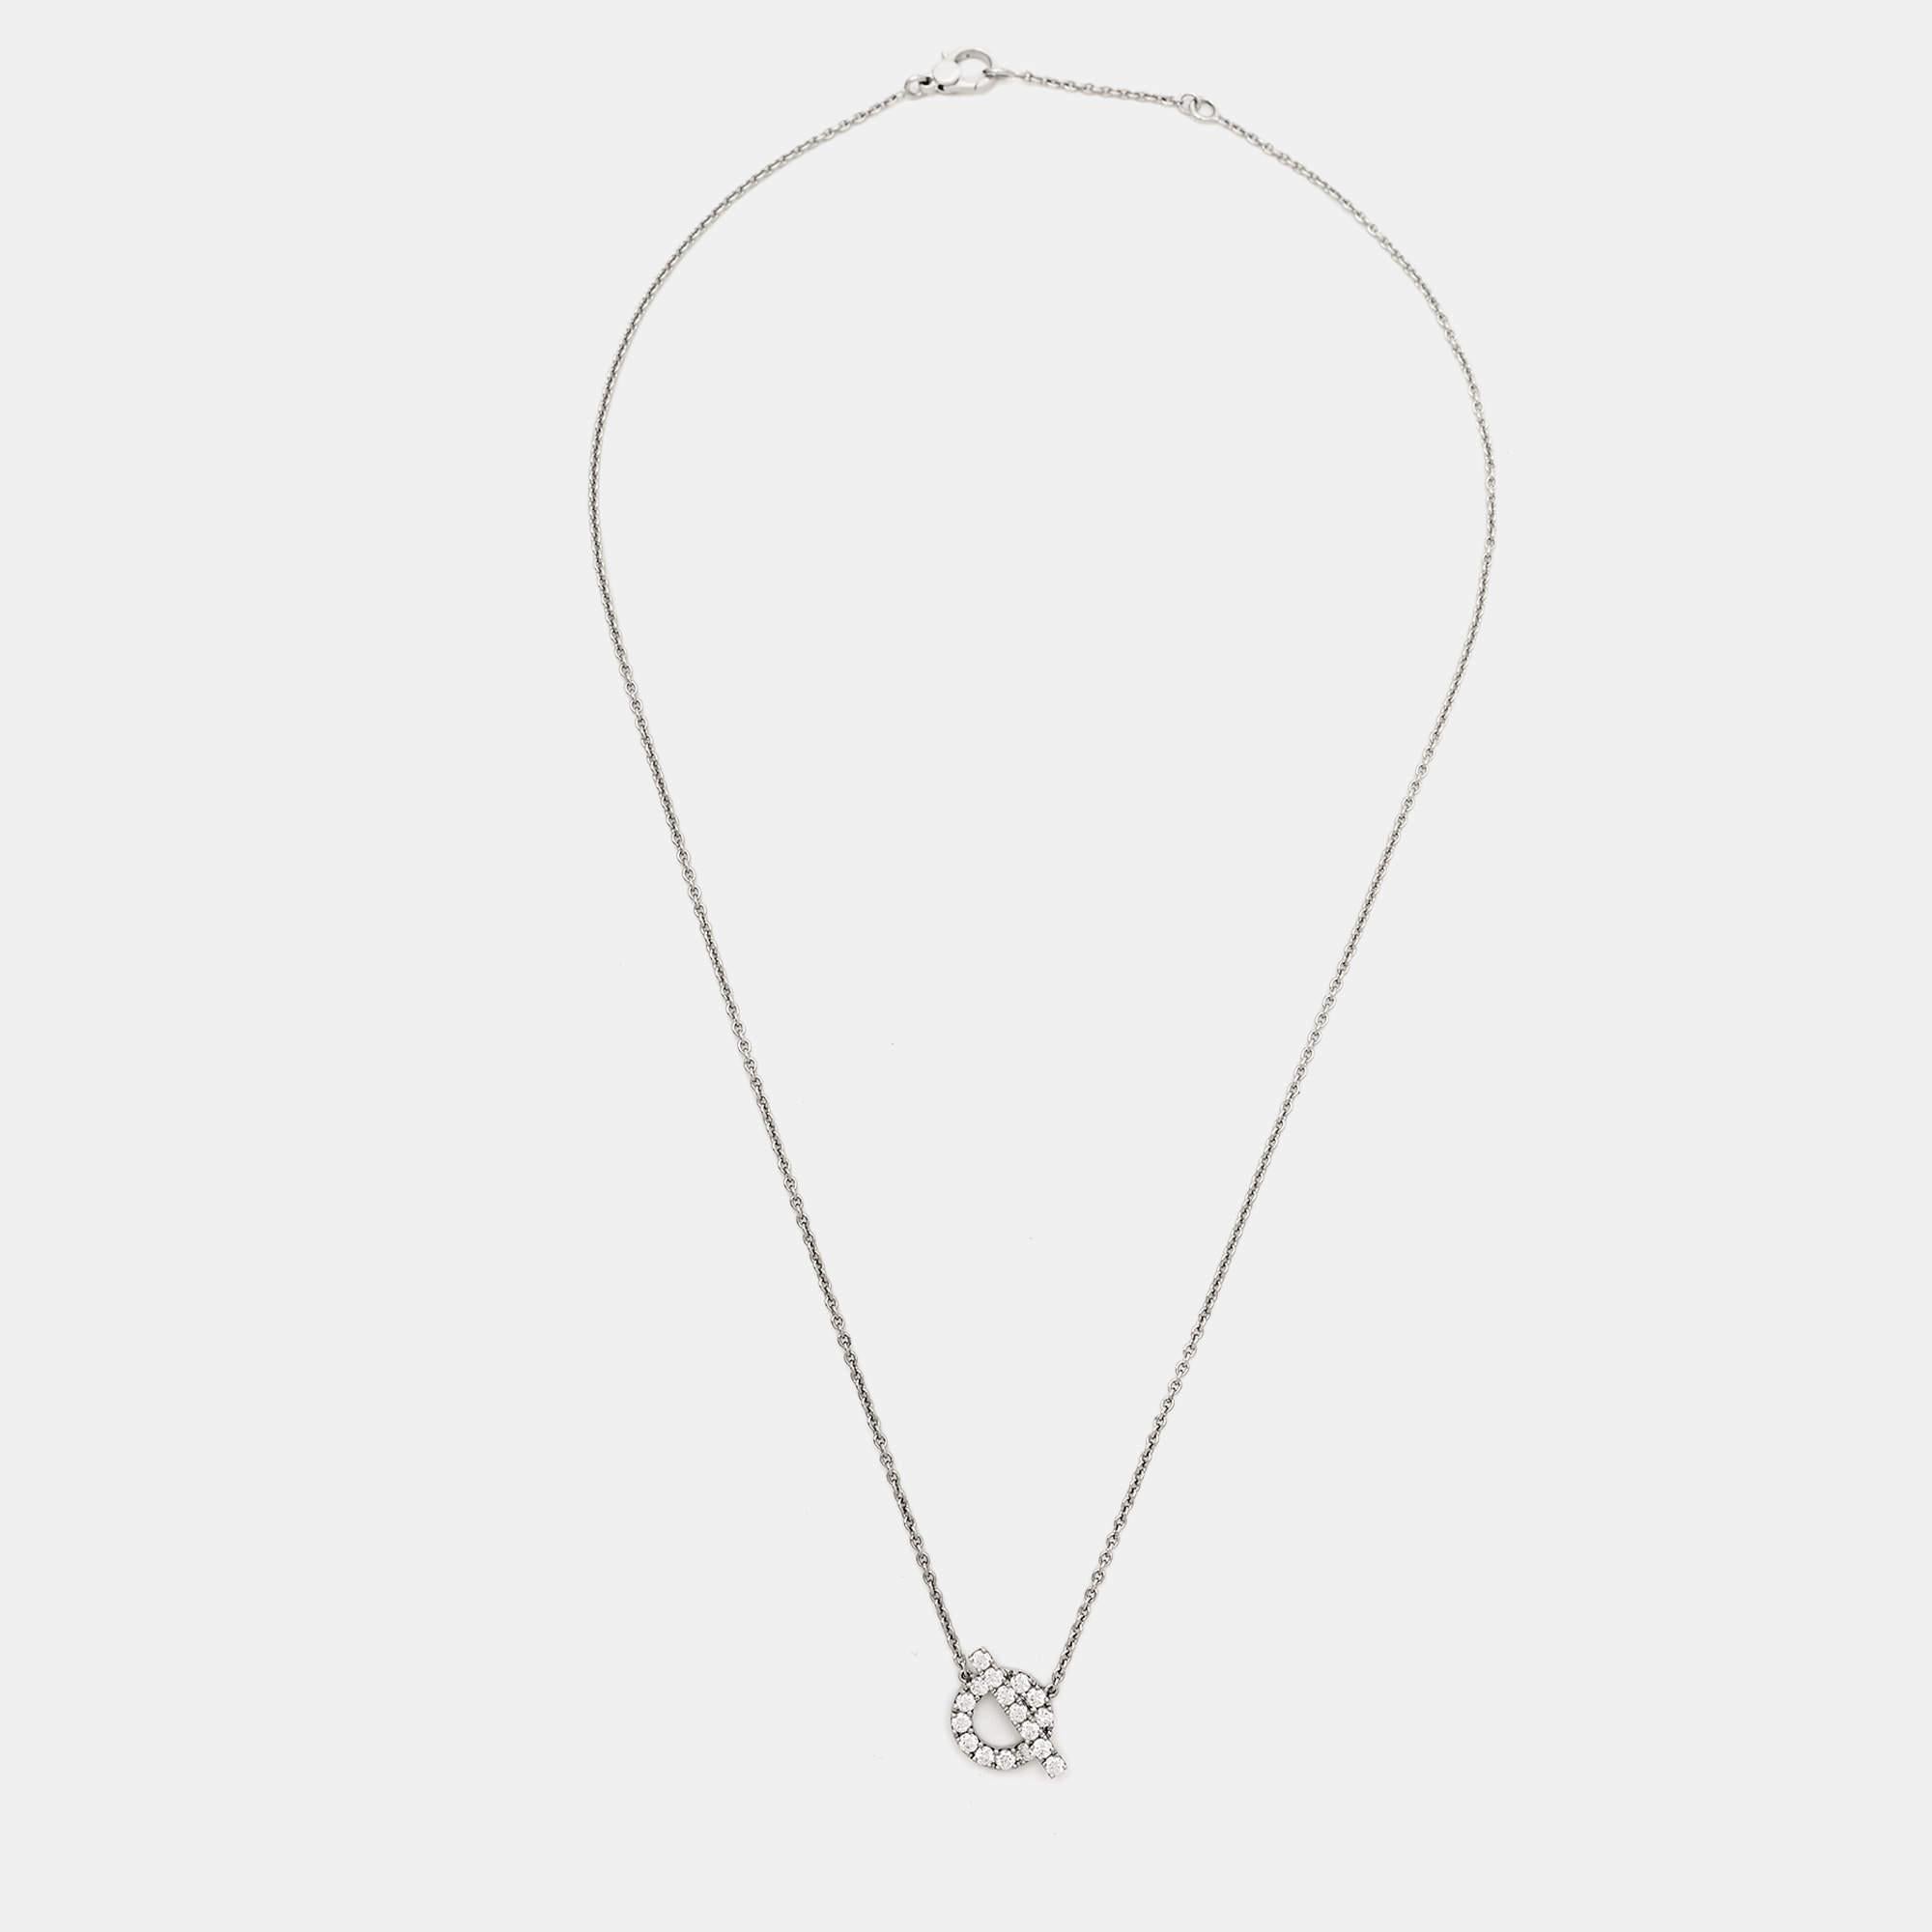 Le collier Hermès Finesse est une pièce exquise réalisée en or blanc 18 carats. Délicate et élégante, elle se compose d'une fine chaîne ornée d'un pendentif avec des diamants taille brillant, dégageant une sophistication intemporelle. Ce collier